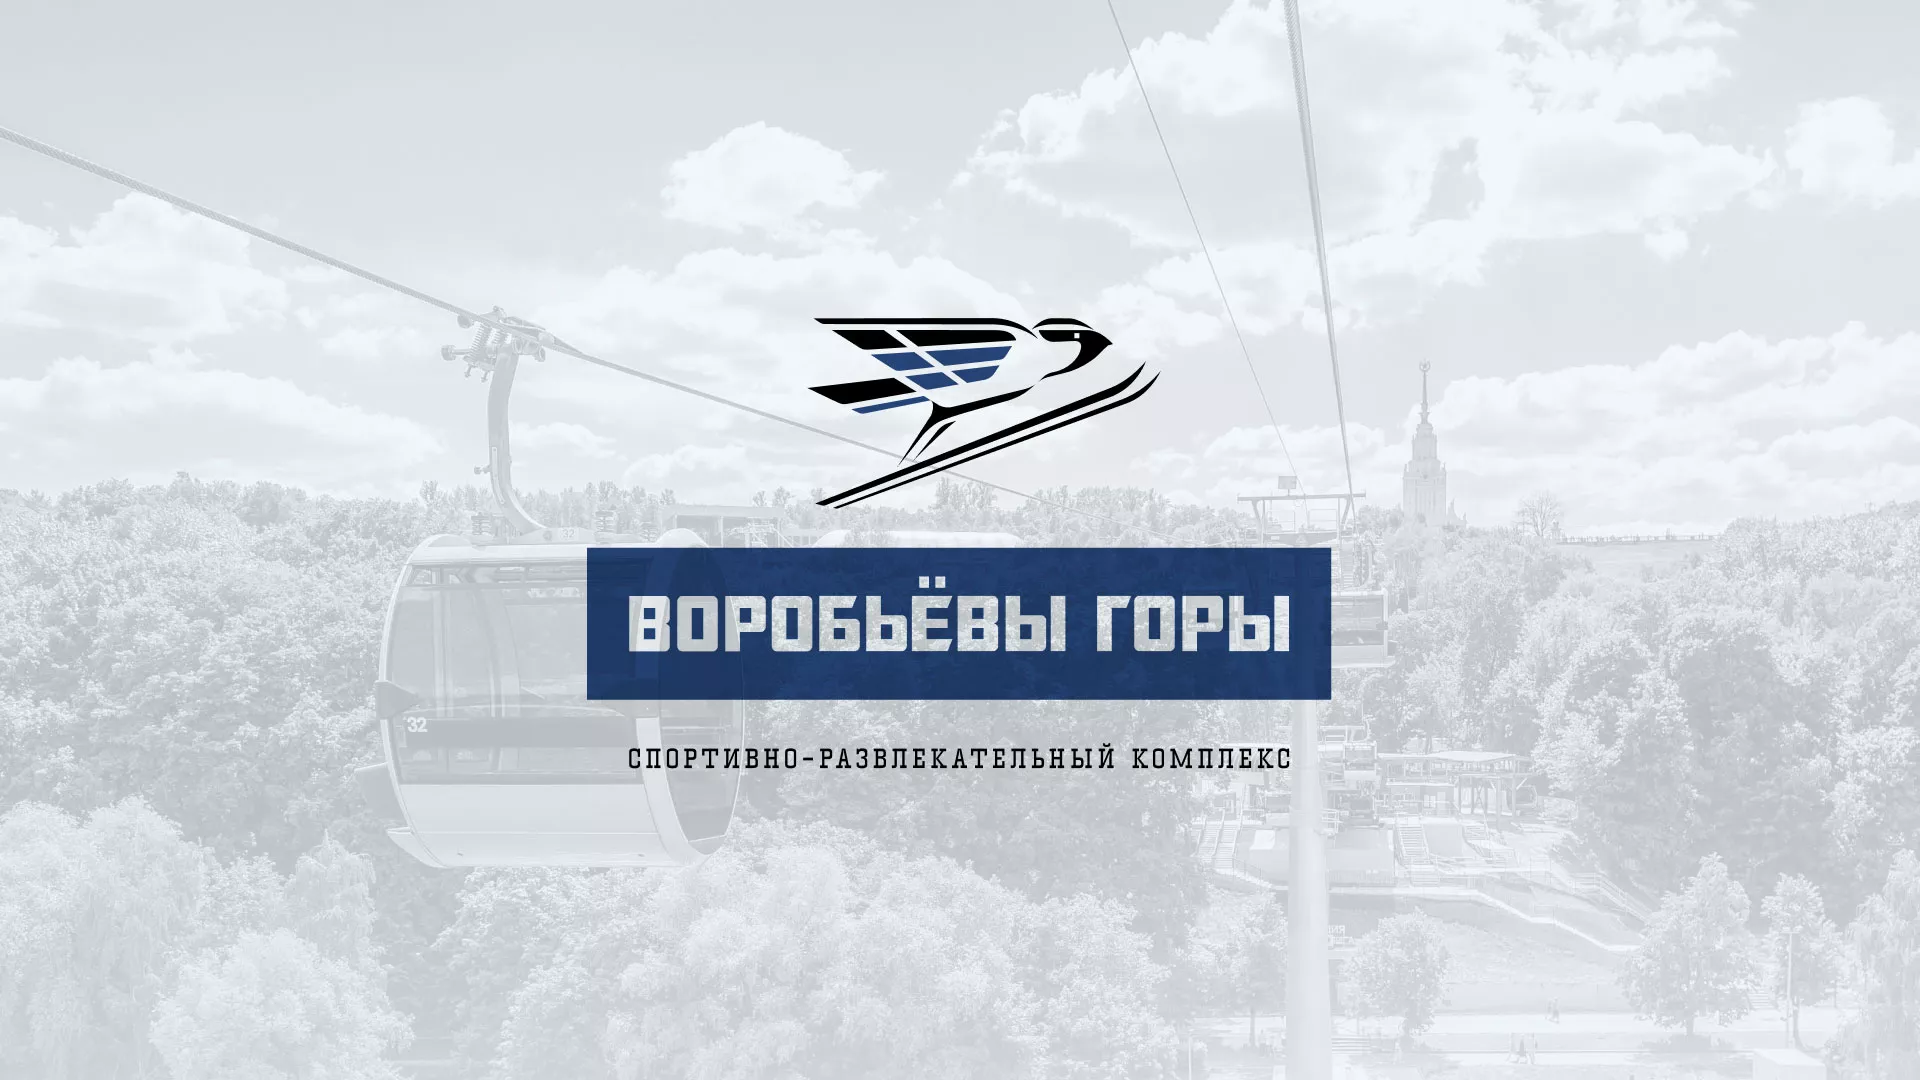 Разработка сайта в Грязовце для спортивно-развлекательного комплекса «Воробьёвы горы»